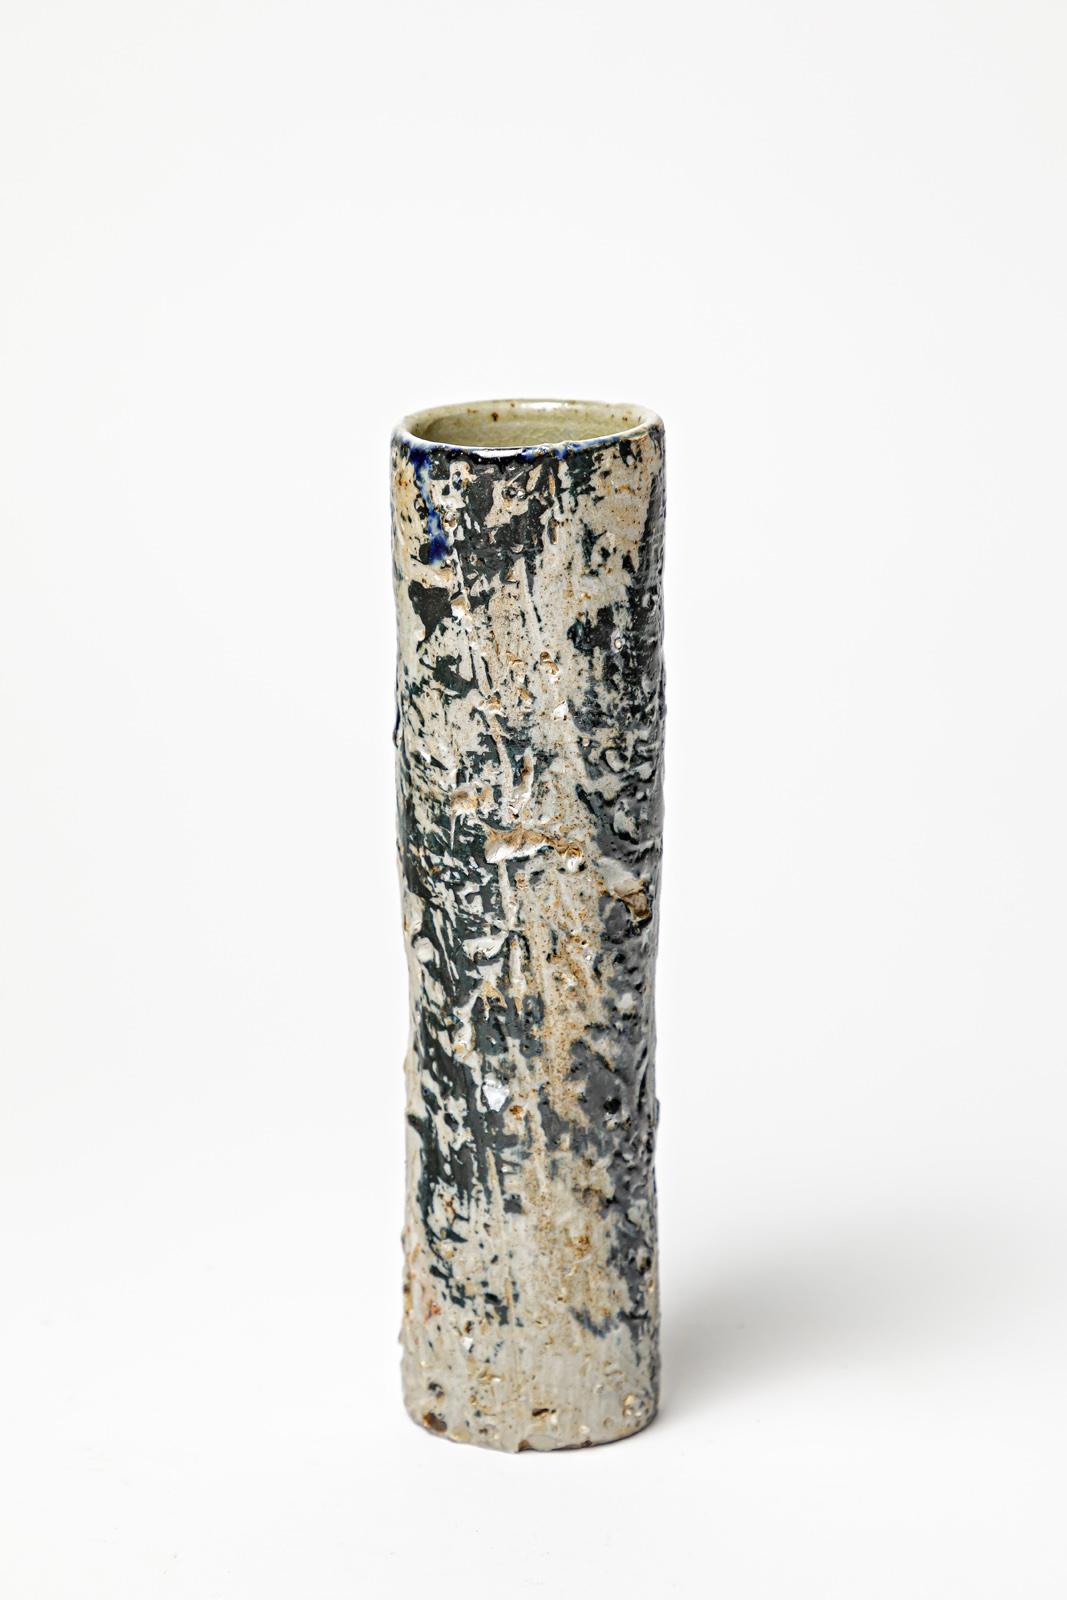 Contemporary David Whitehead La Borne set of three colored ceramics vases contemporary art  For Sale